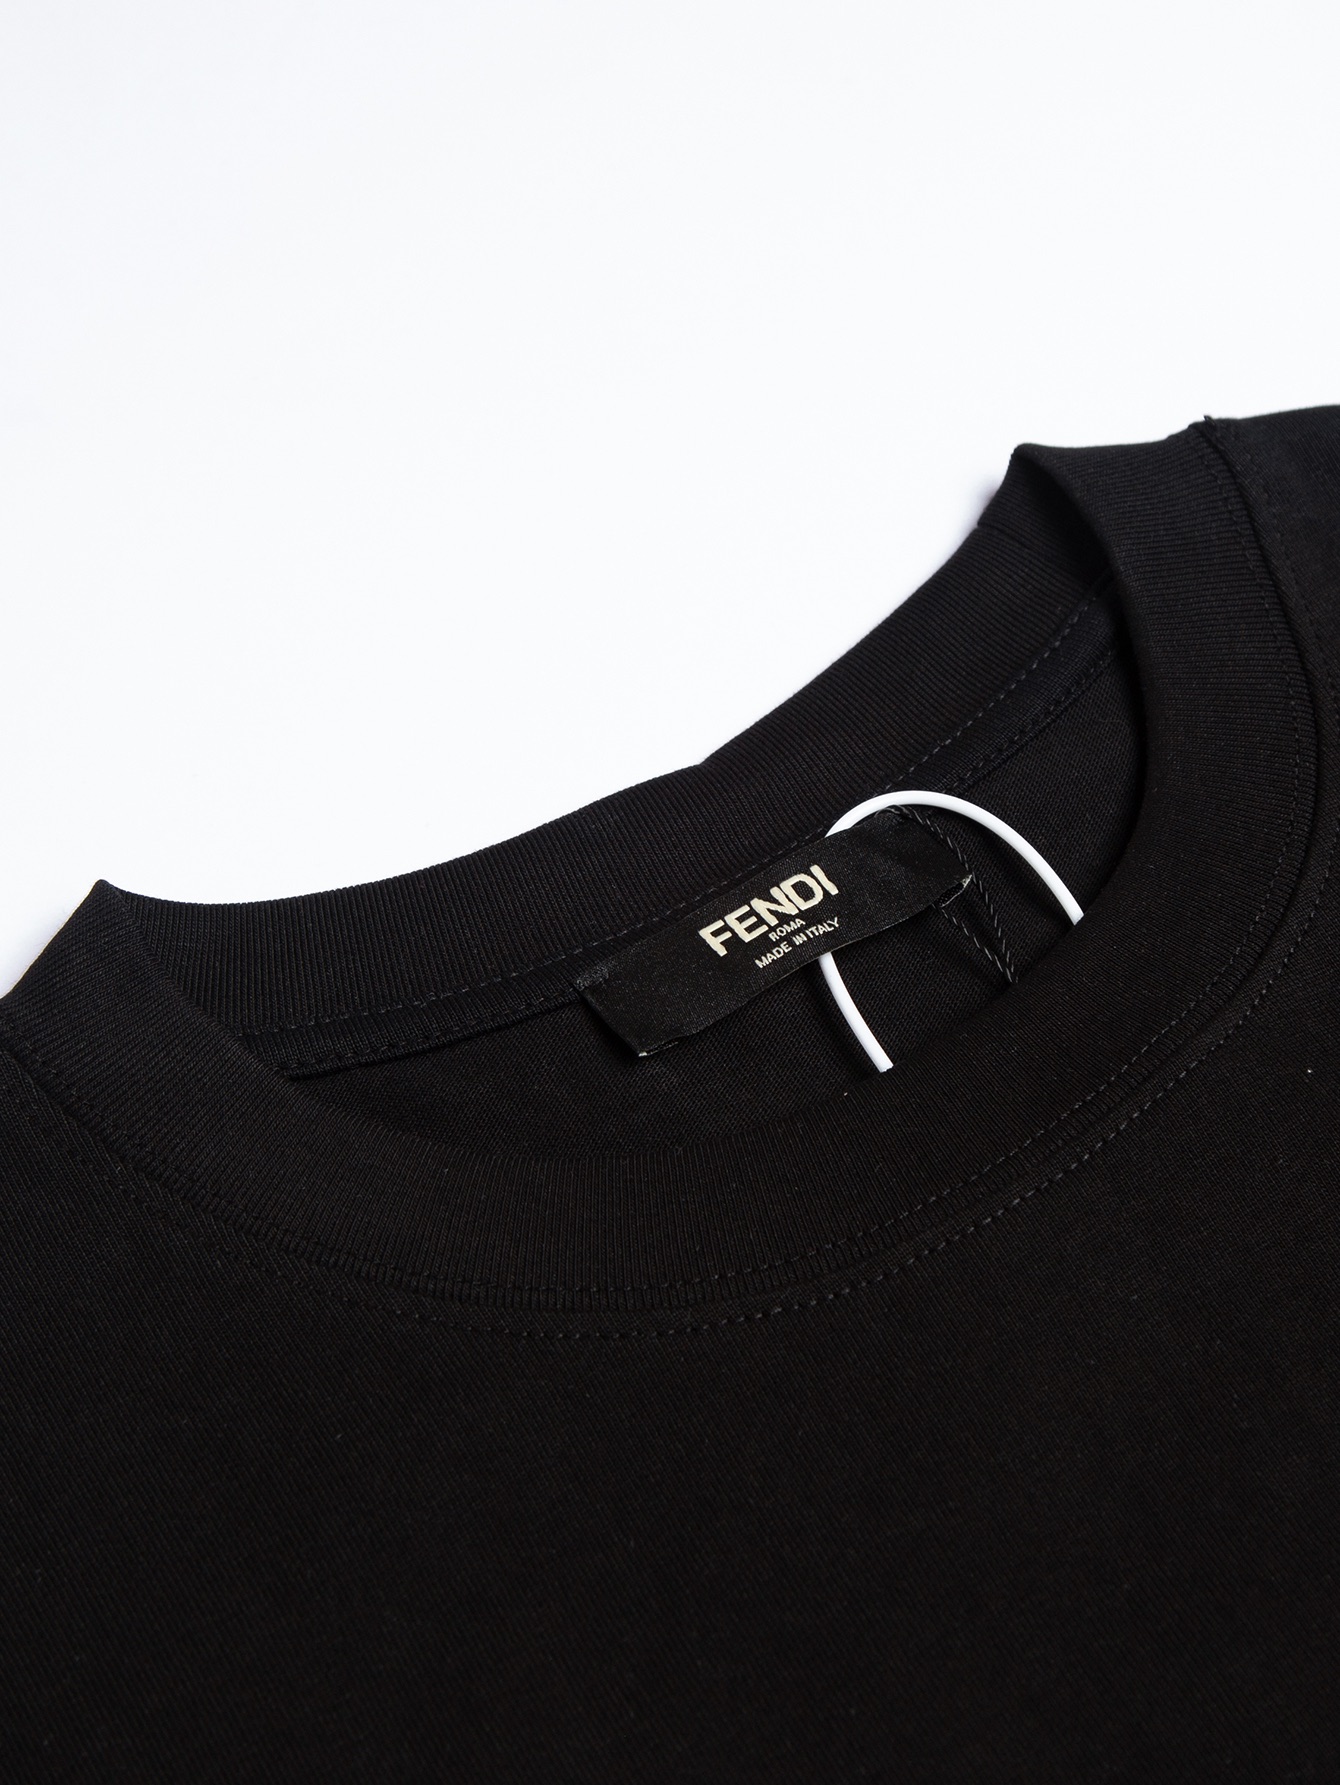 フェンディ ワイシャツスーパーコピー トップス 綿100% 短袖 Tシャツ 男女兼用 シンプル ファッション ブラック_5